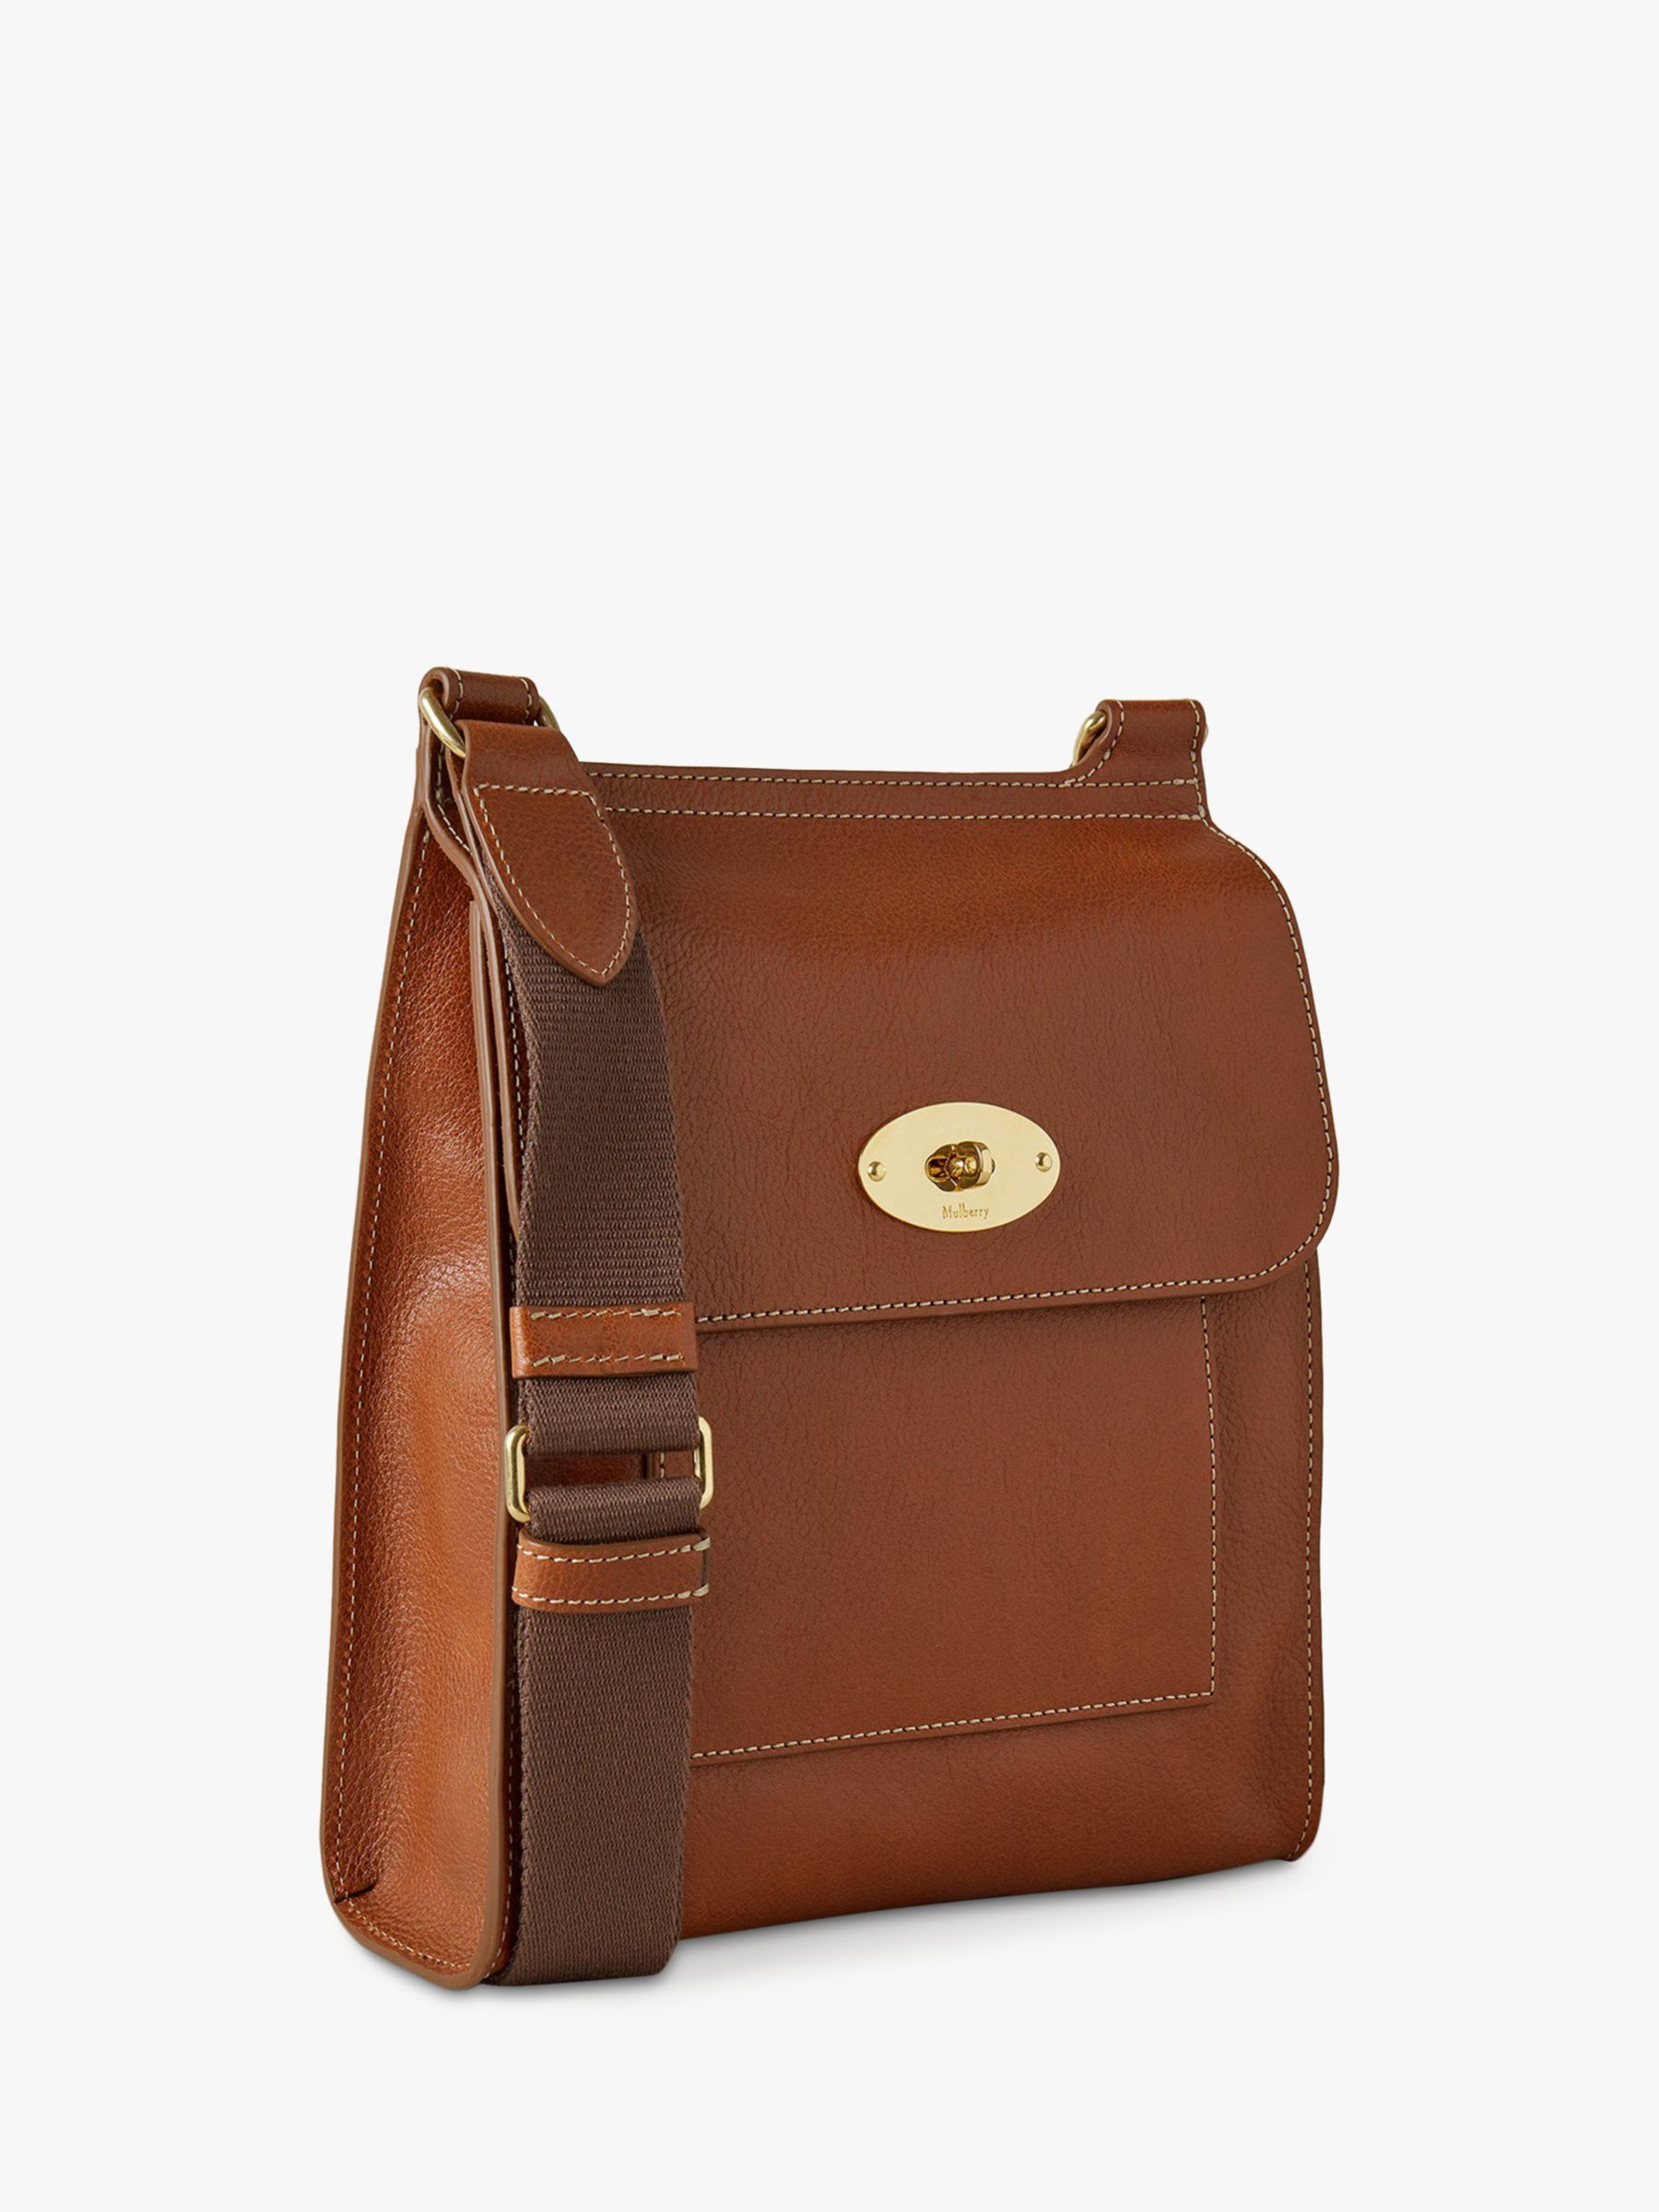 Vintage Mulberry Crossbody Shoulder Bag Messenger Brown Leather